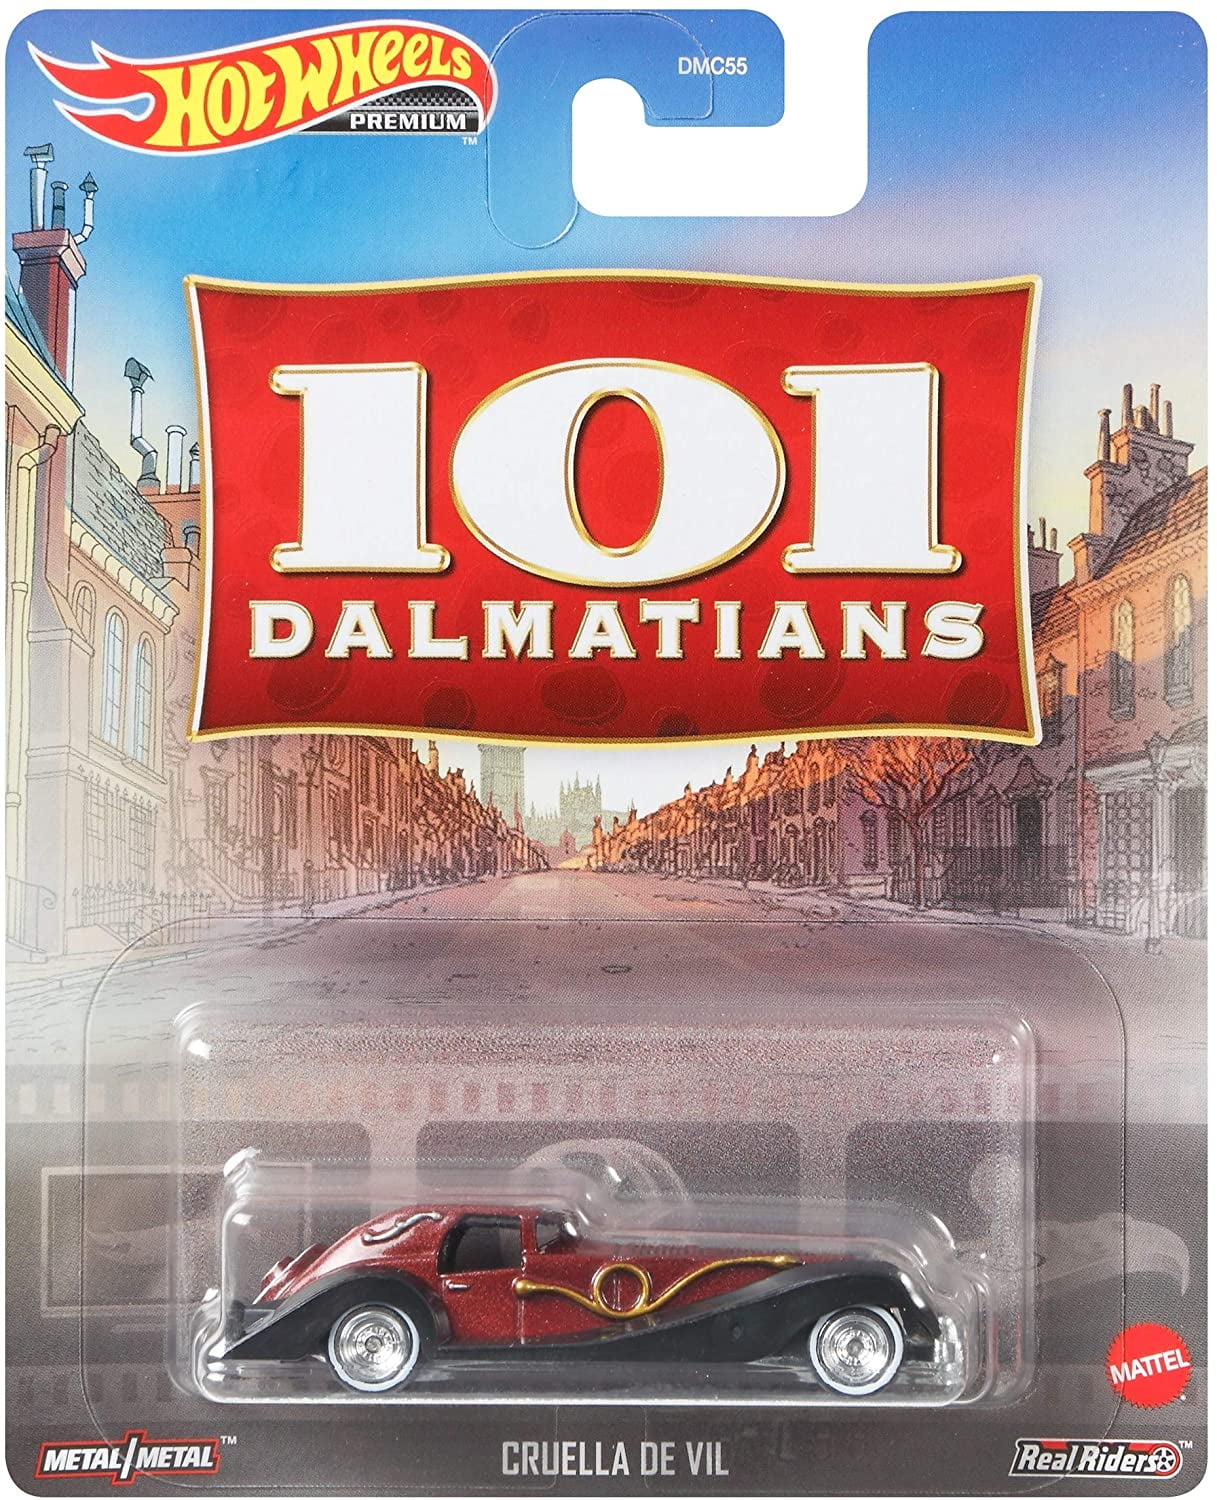 Brand New Mattel Hot Wheels Premium 101 Dalmatians Cruella De Vil 